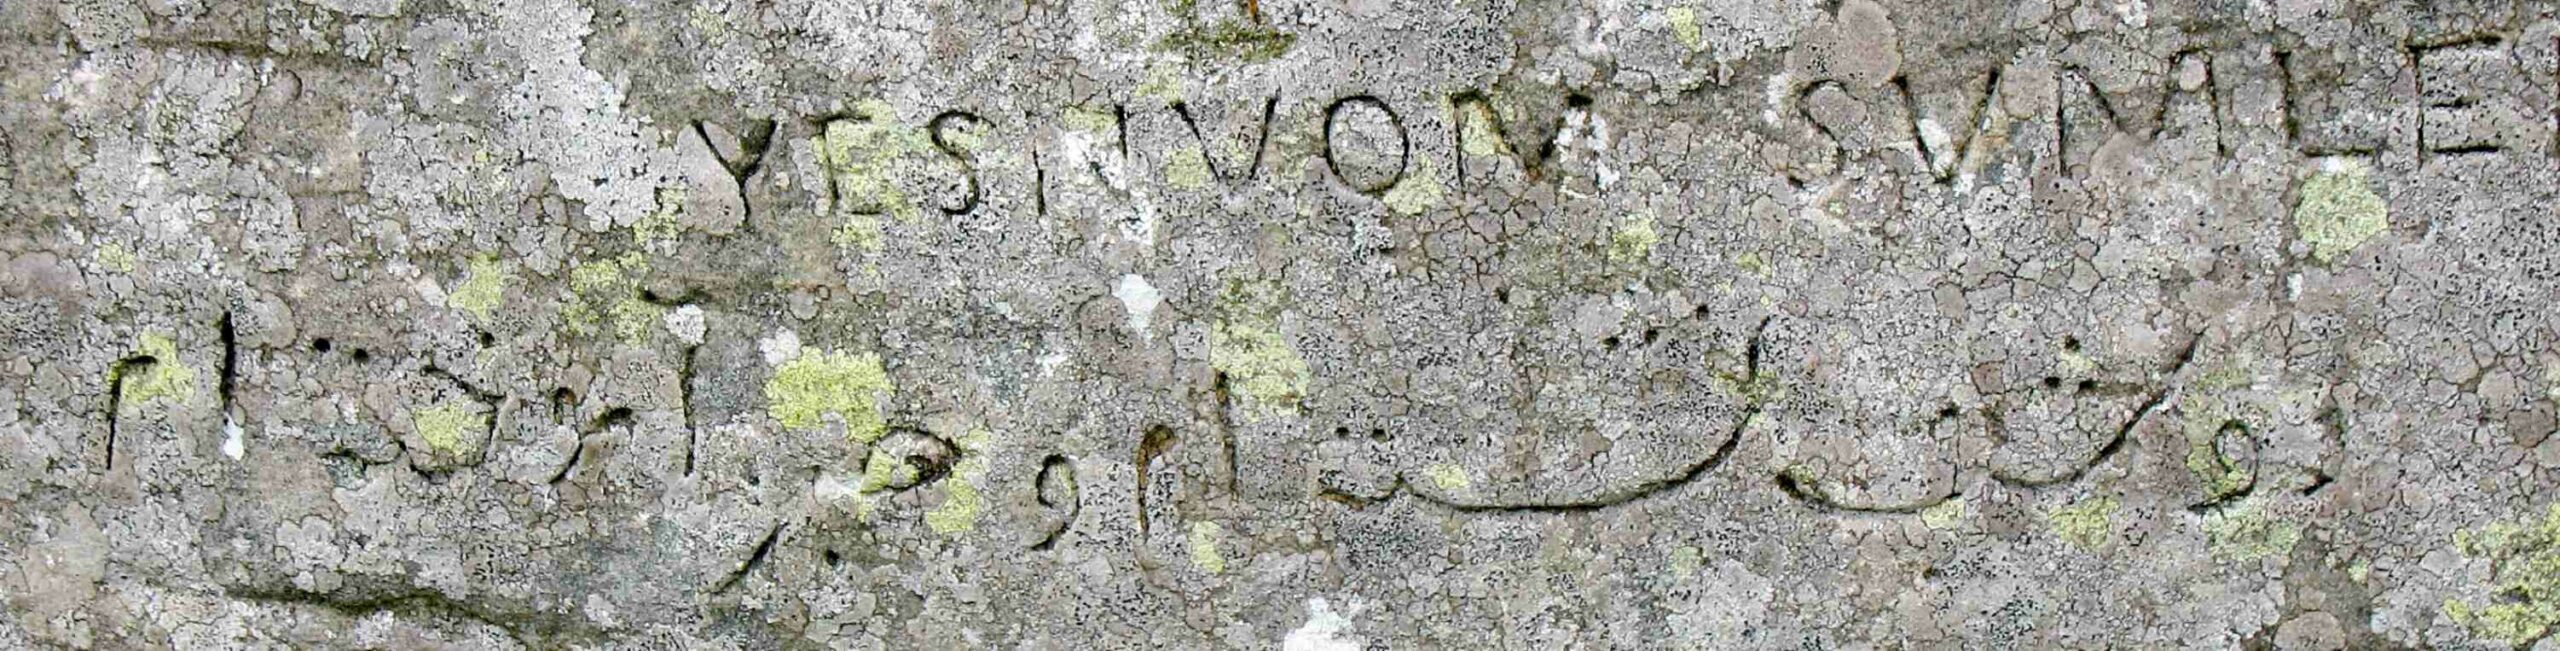 Aceasta este o inscripție în caligrafia persană pe Stane pitic. A fost lăsat de căpitanul William Henry Mounsey din Castletown și Rockcliffe, care a tabărat aici în 1850, și scrie: „Am stat două nopți și așa am învățat să răbdăm”. Deasupra persanului este numele lui scris invers în latină.